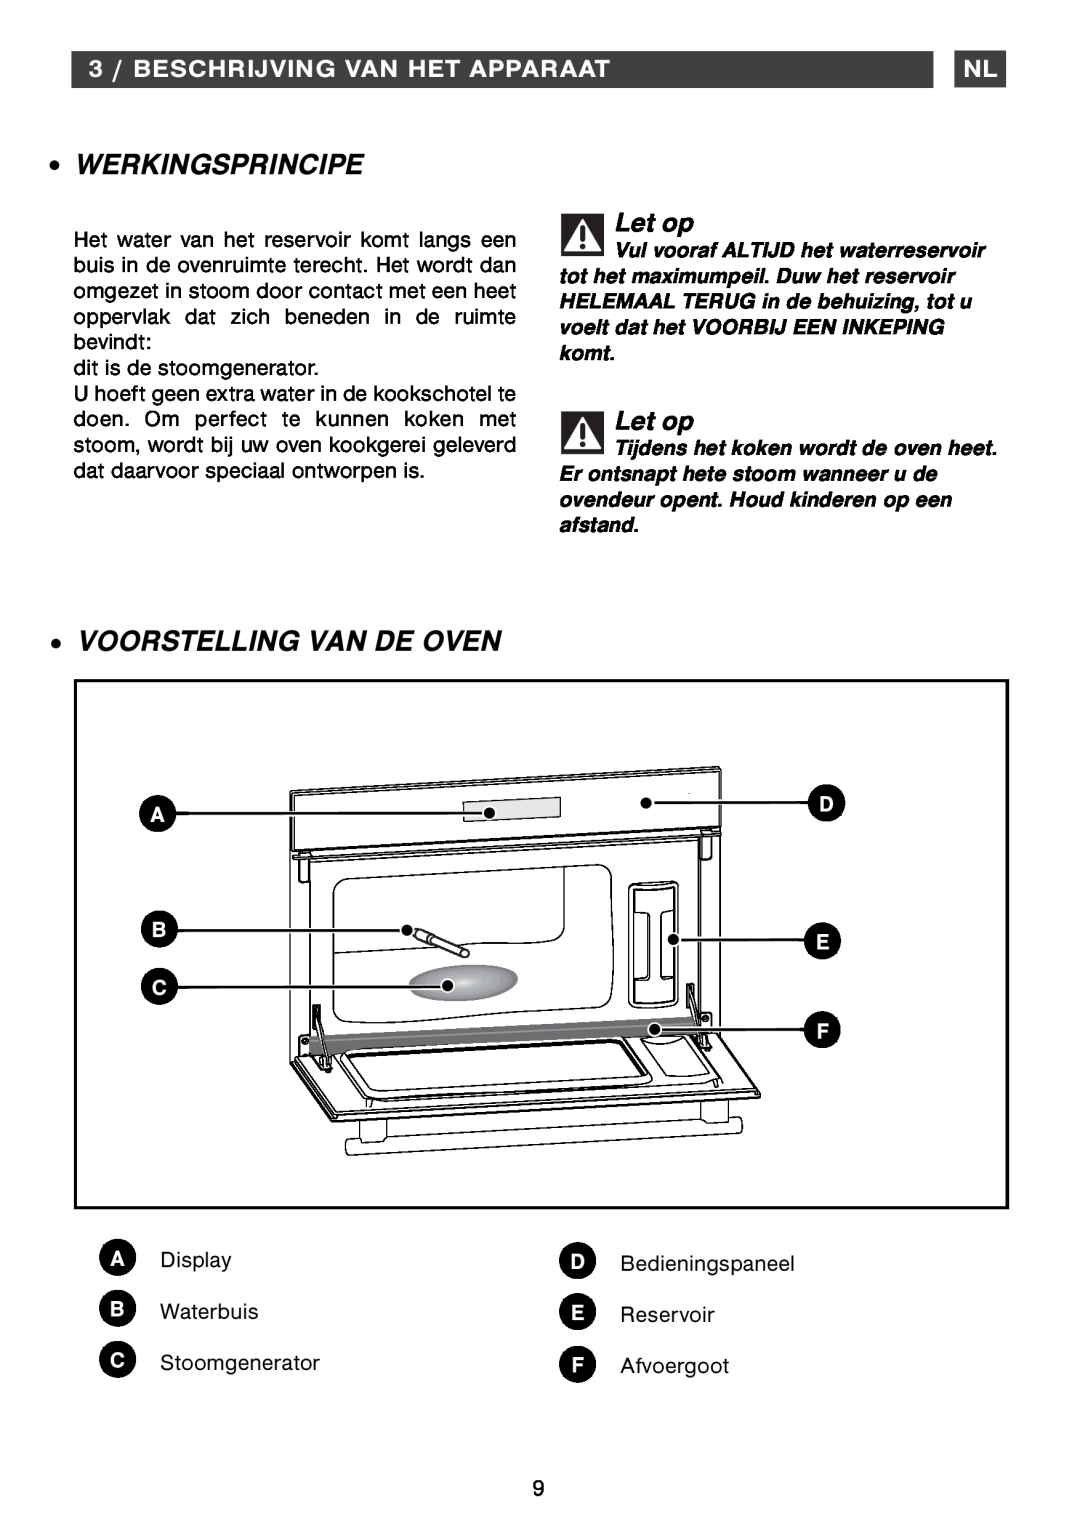 Smeg Four Oven Werkingsprincipe, Voorstelling Van De Oven, 3 / BESCHRIJVING VAN HET APPARAAT, Let op, B E C F, Display 